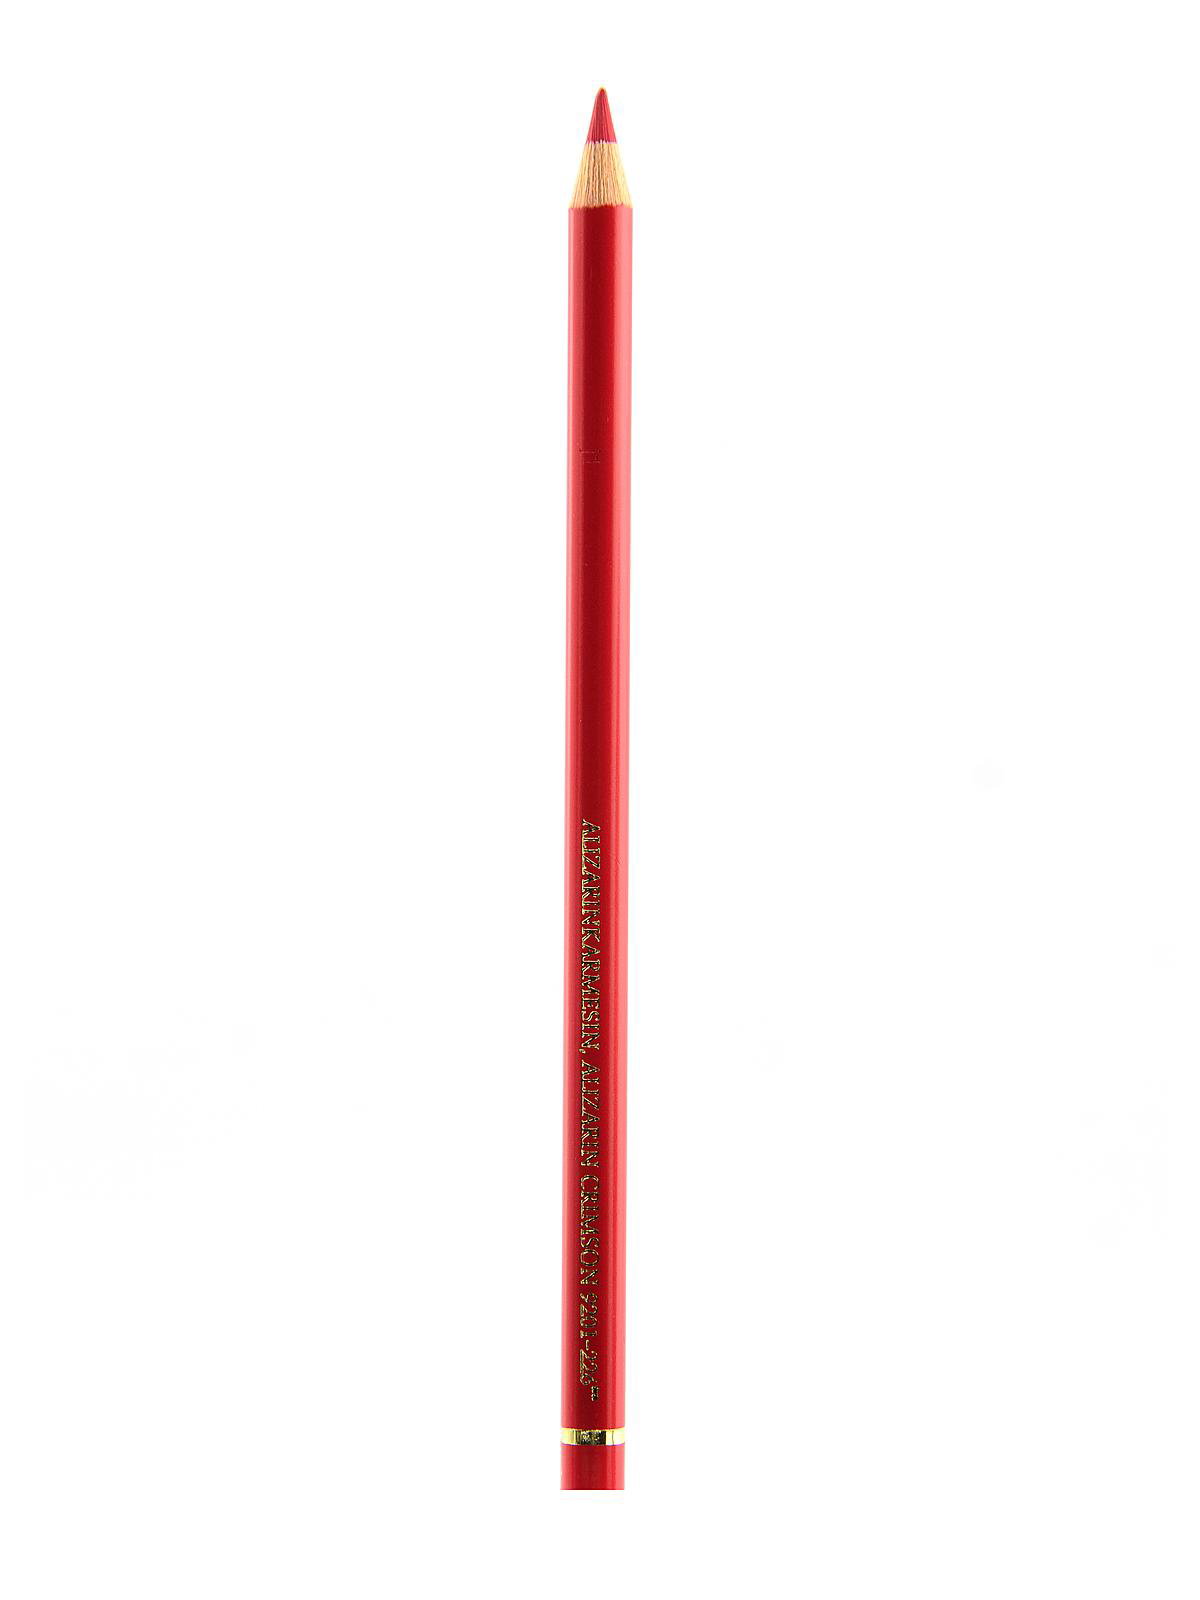 Faber-Castell Polychromos Pencil - 169 - Caput Mortuum